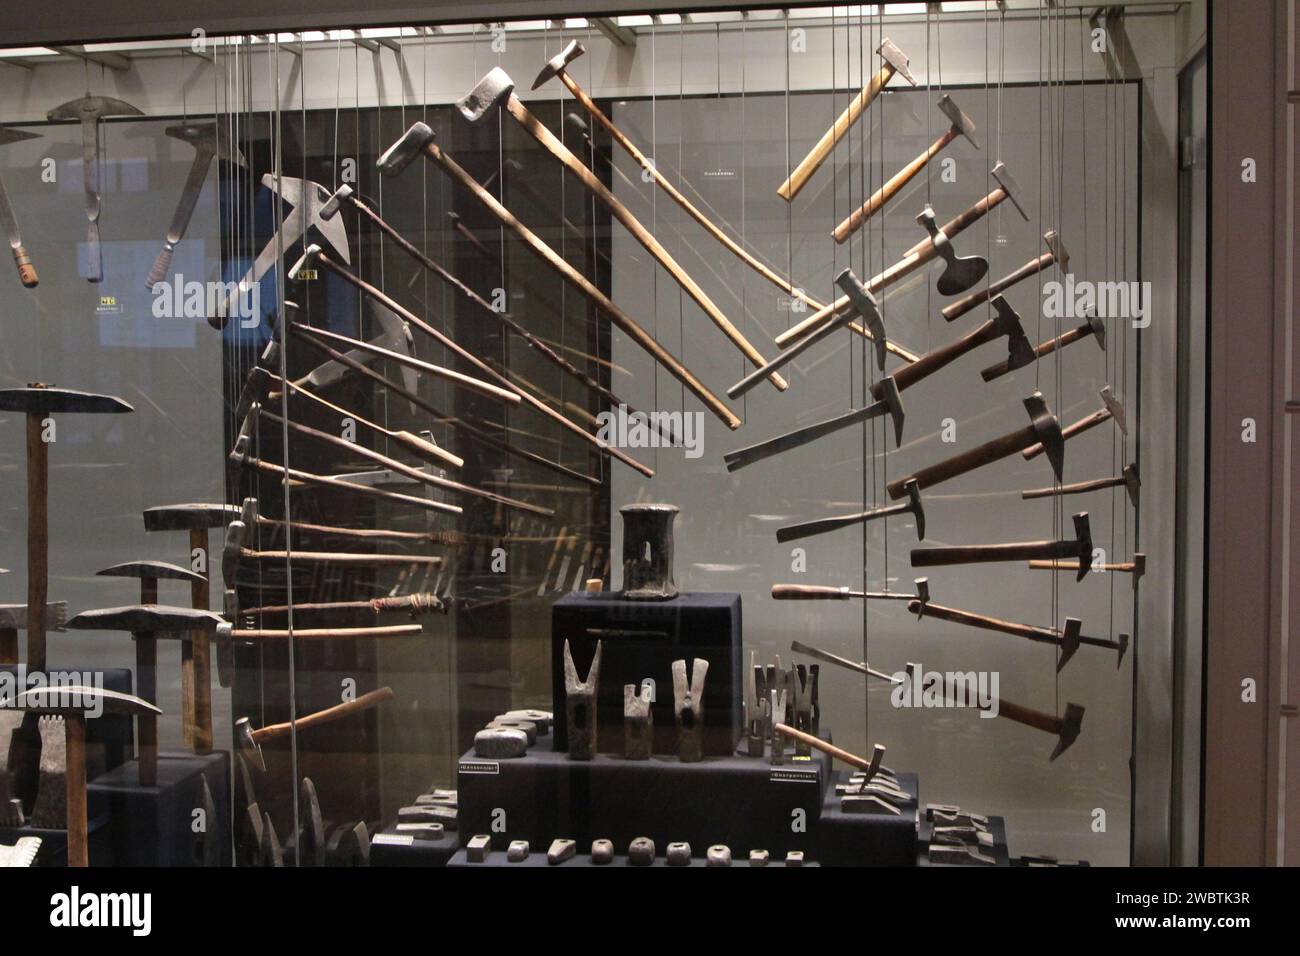 La façon dont ces marteaux sont exposés au Musée de l'outil à Troyes, en France, reproduit le mouvement qu'un utilisateur de cet outil ferait. Banque D'Images